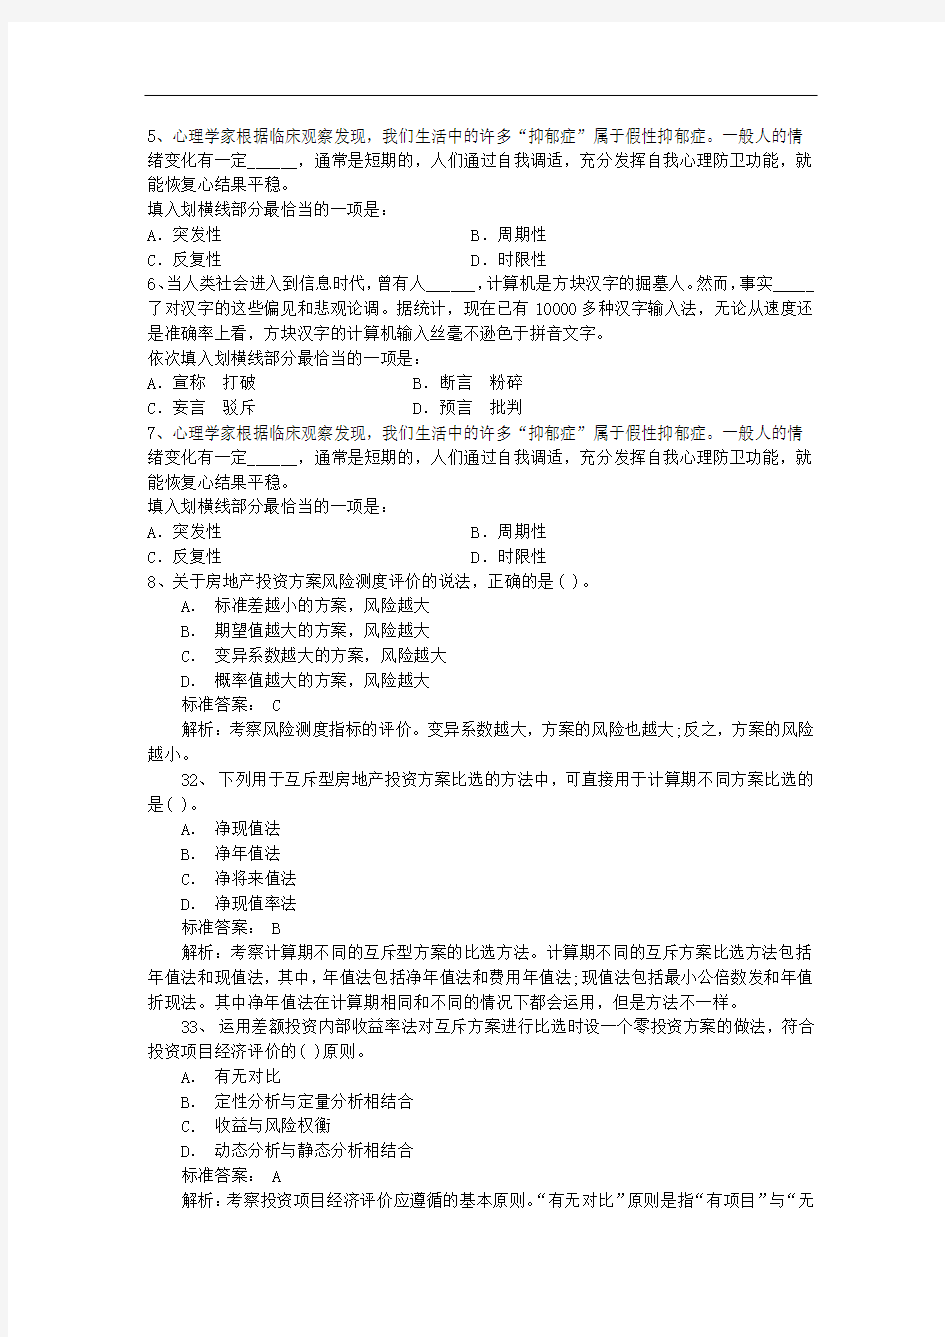 2014年公务员考试破解图形推理汉字题型每日一练(10月15日)